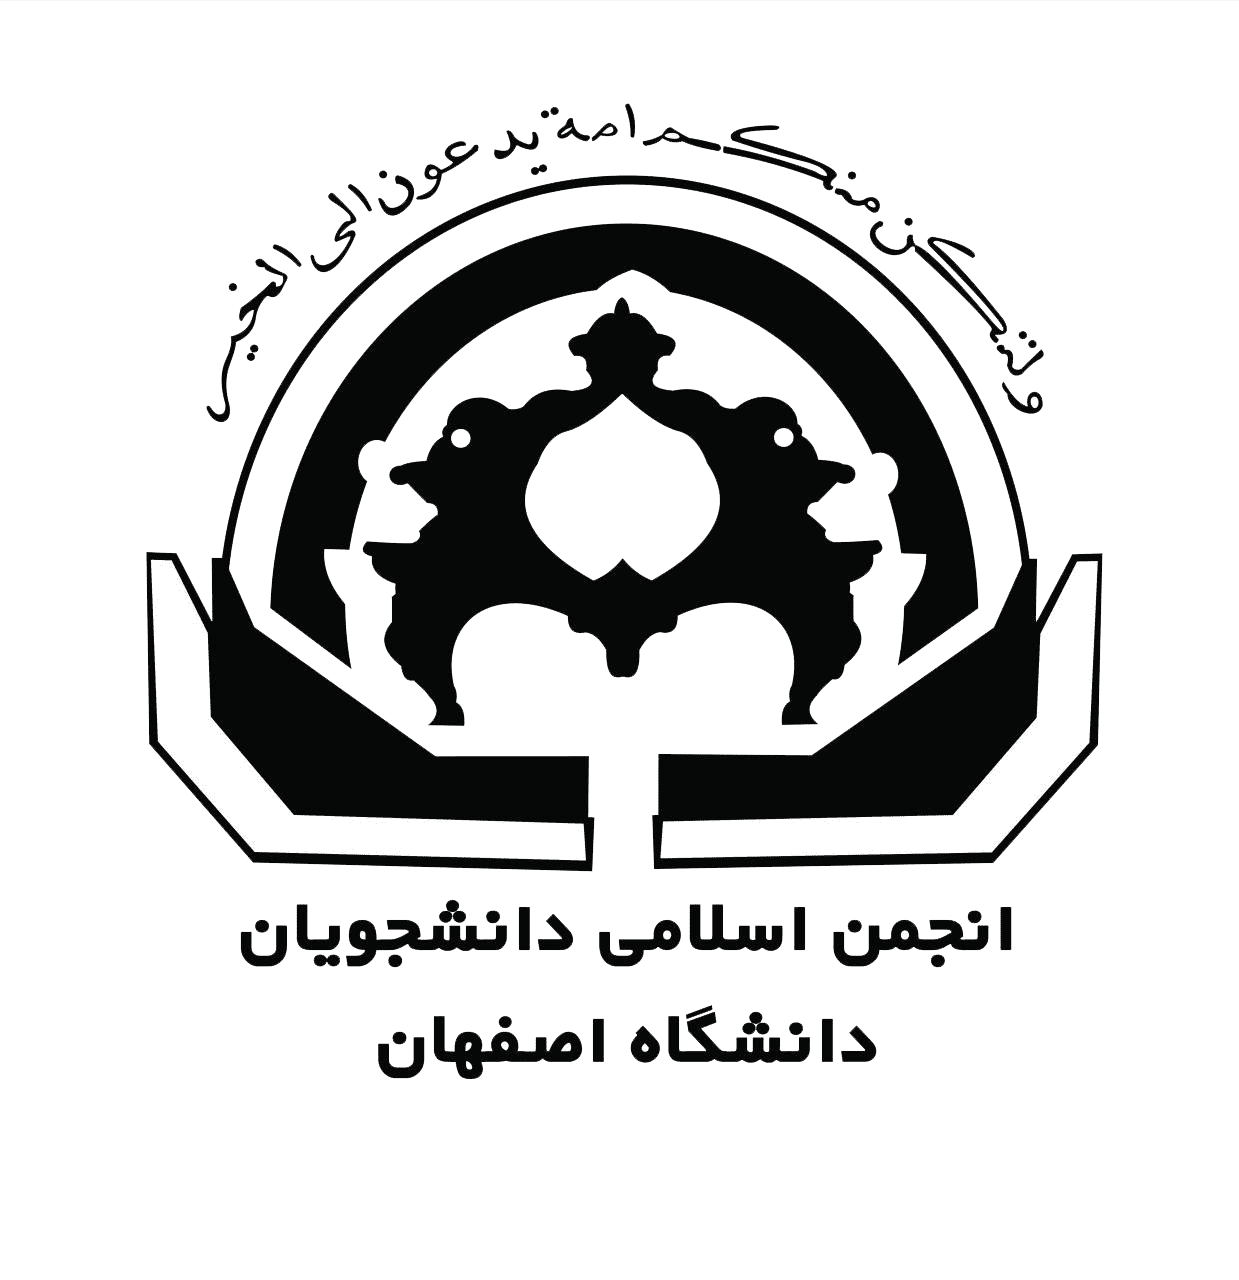 بیانیه انجمن اسلامی دانشجویان دانشگاه اصفهان درباره جعل نام این تشکل دانشجویی